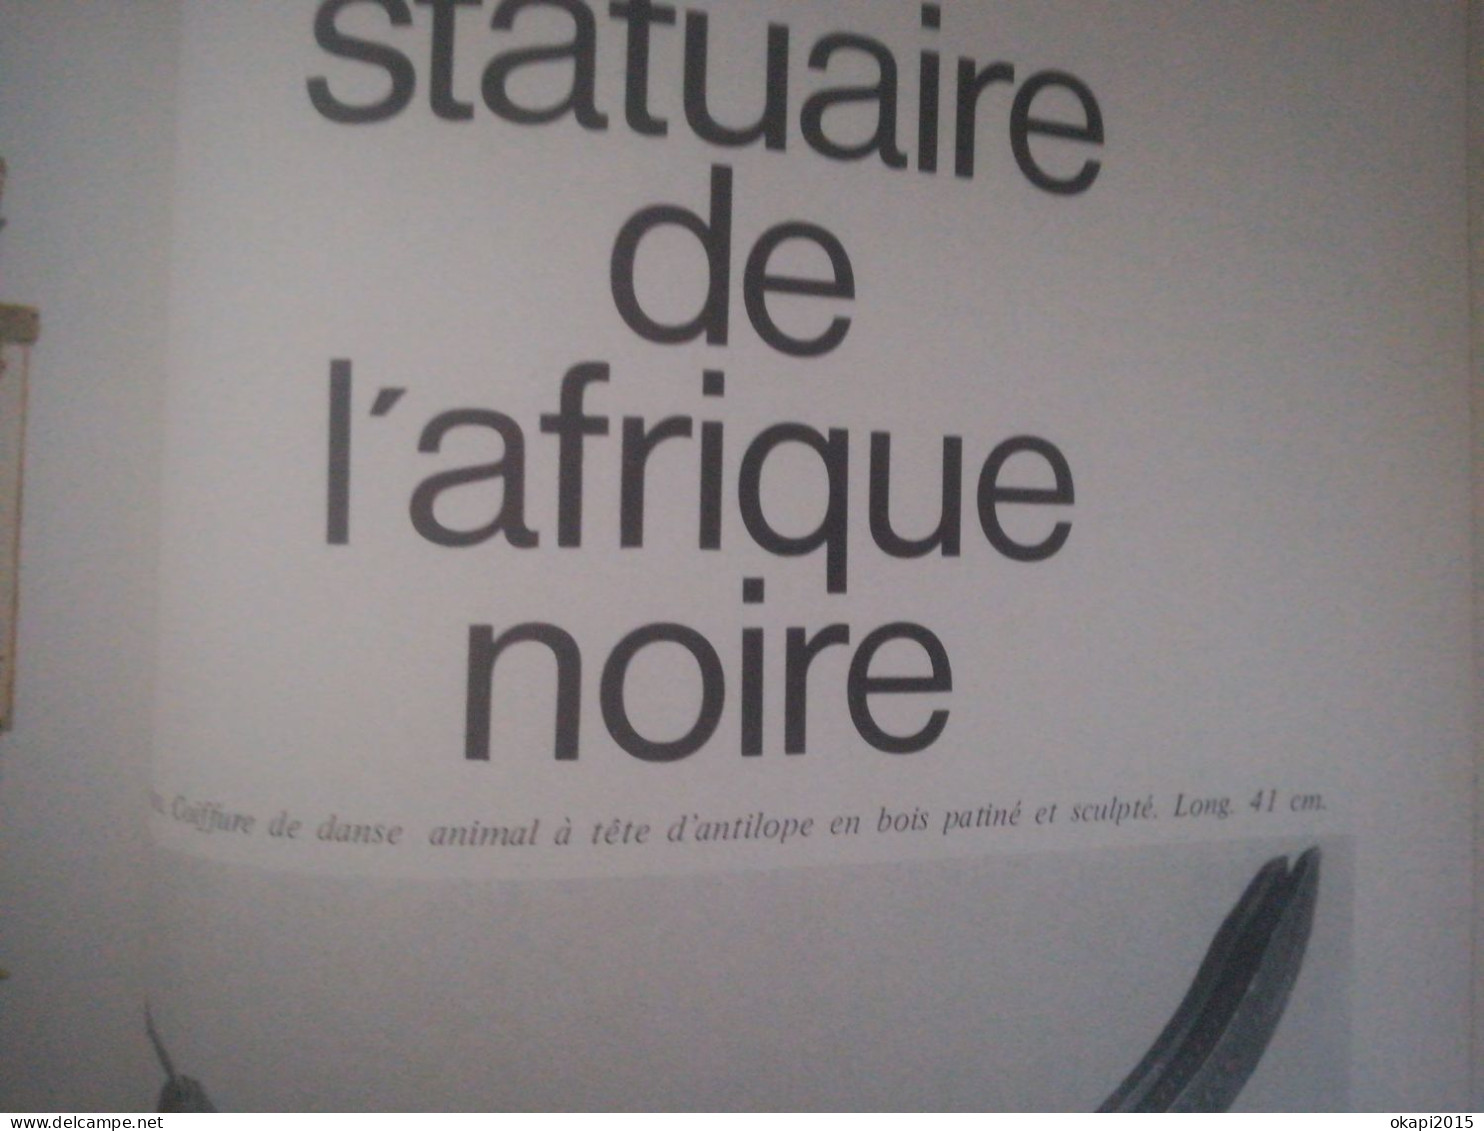 Faïences de Marseille histoire et marques horloges de parquet sculpture d Afrique